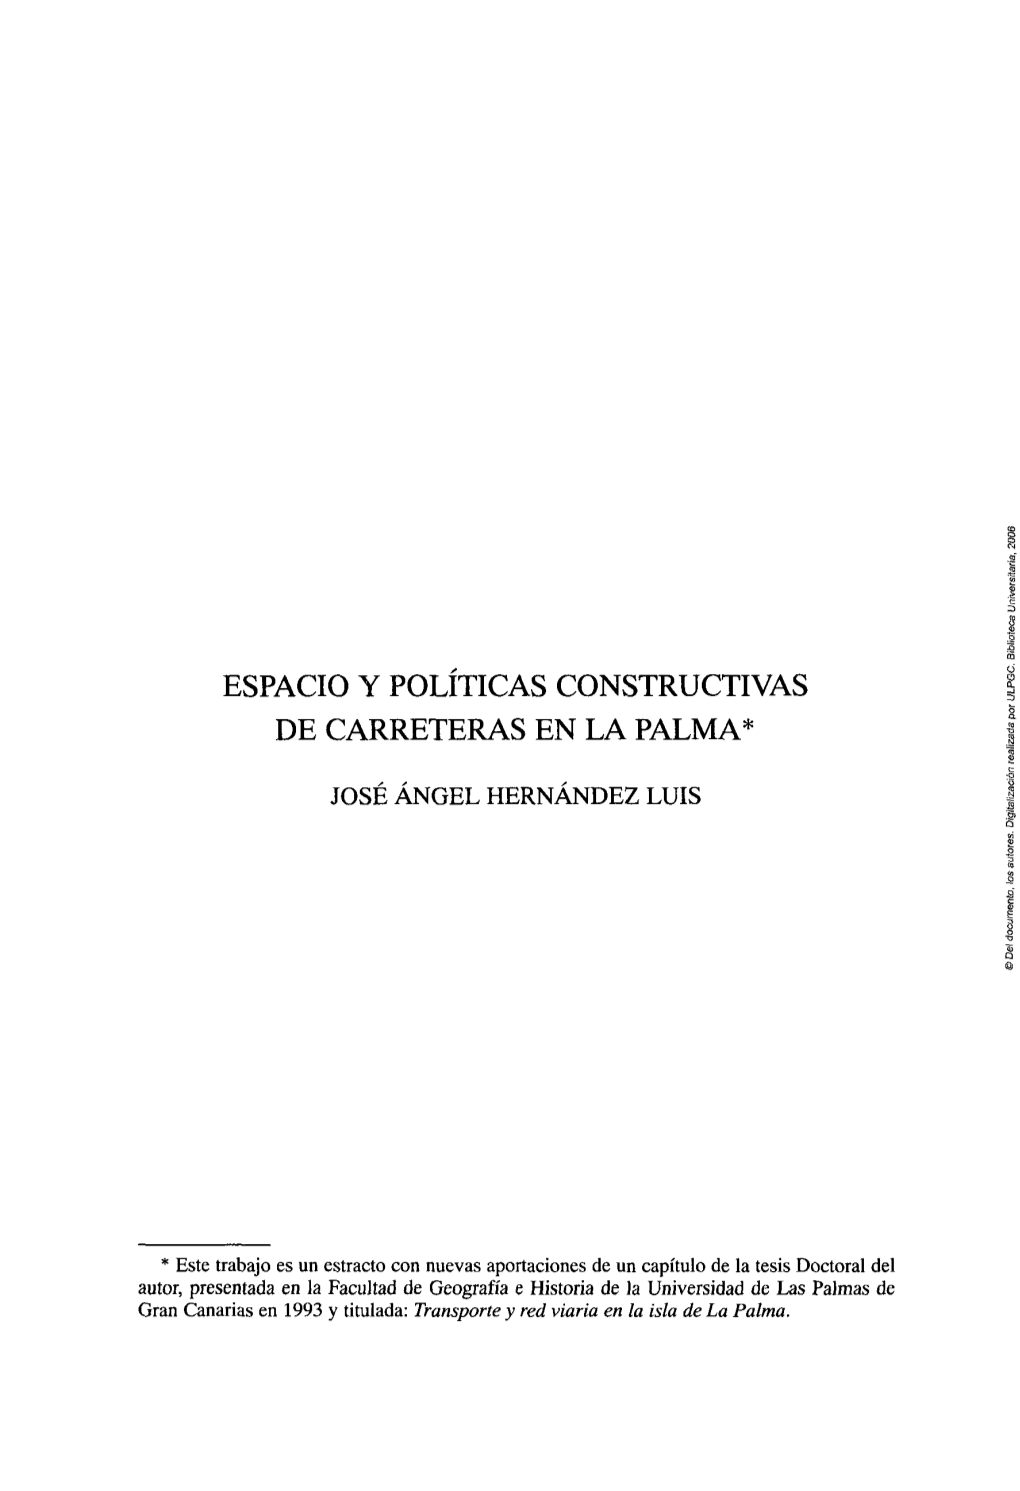 Espacio Y Políticas Constructivas De Carreteras En La Palma*